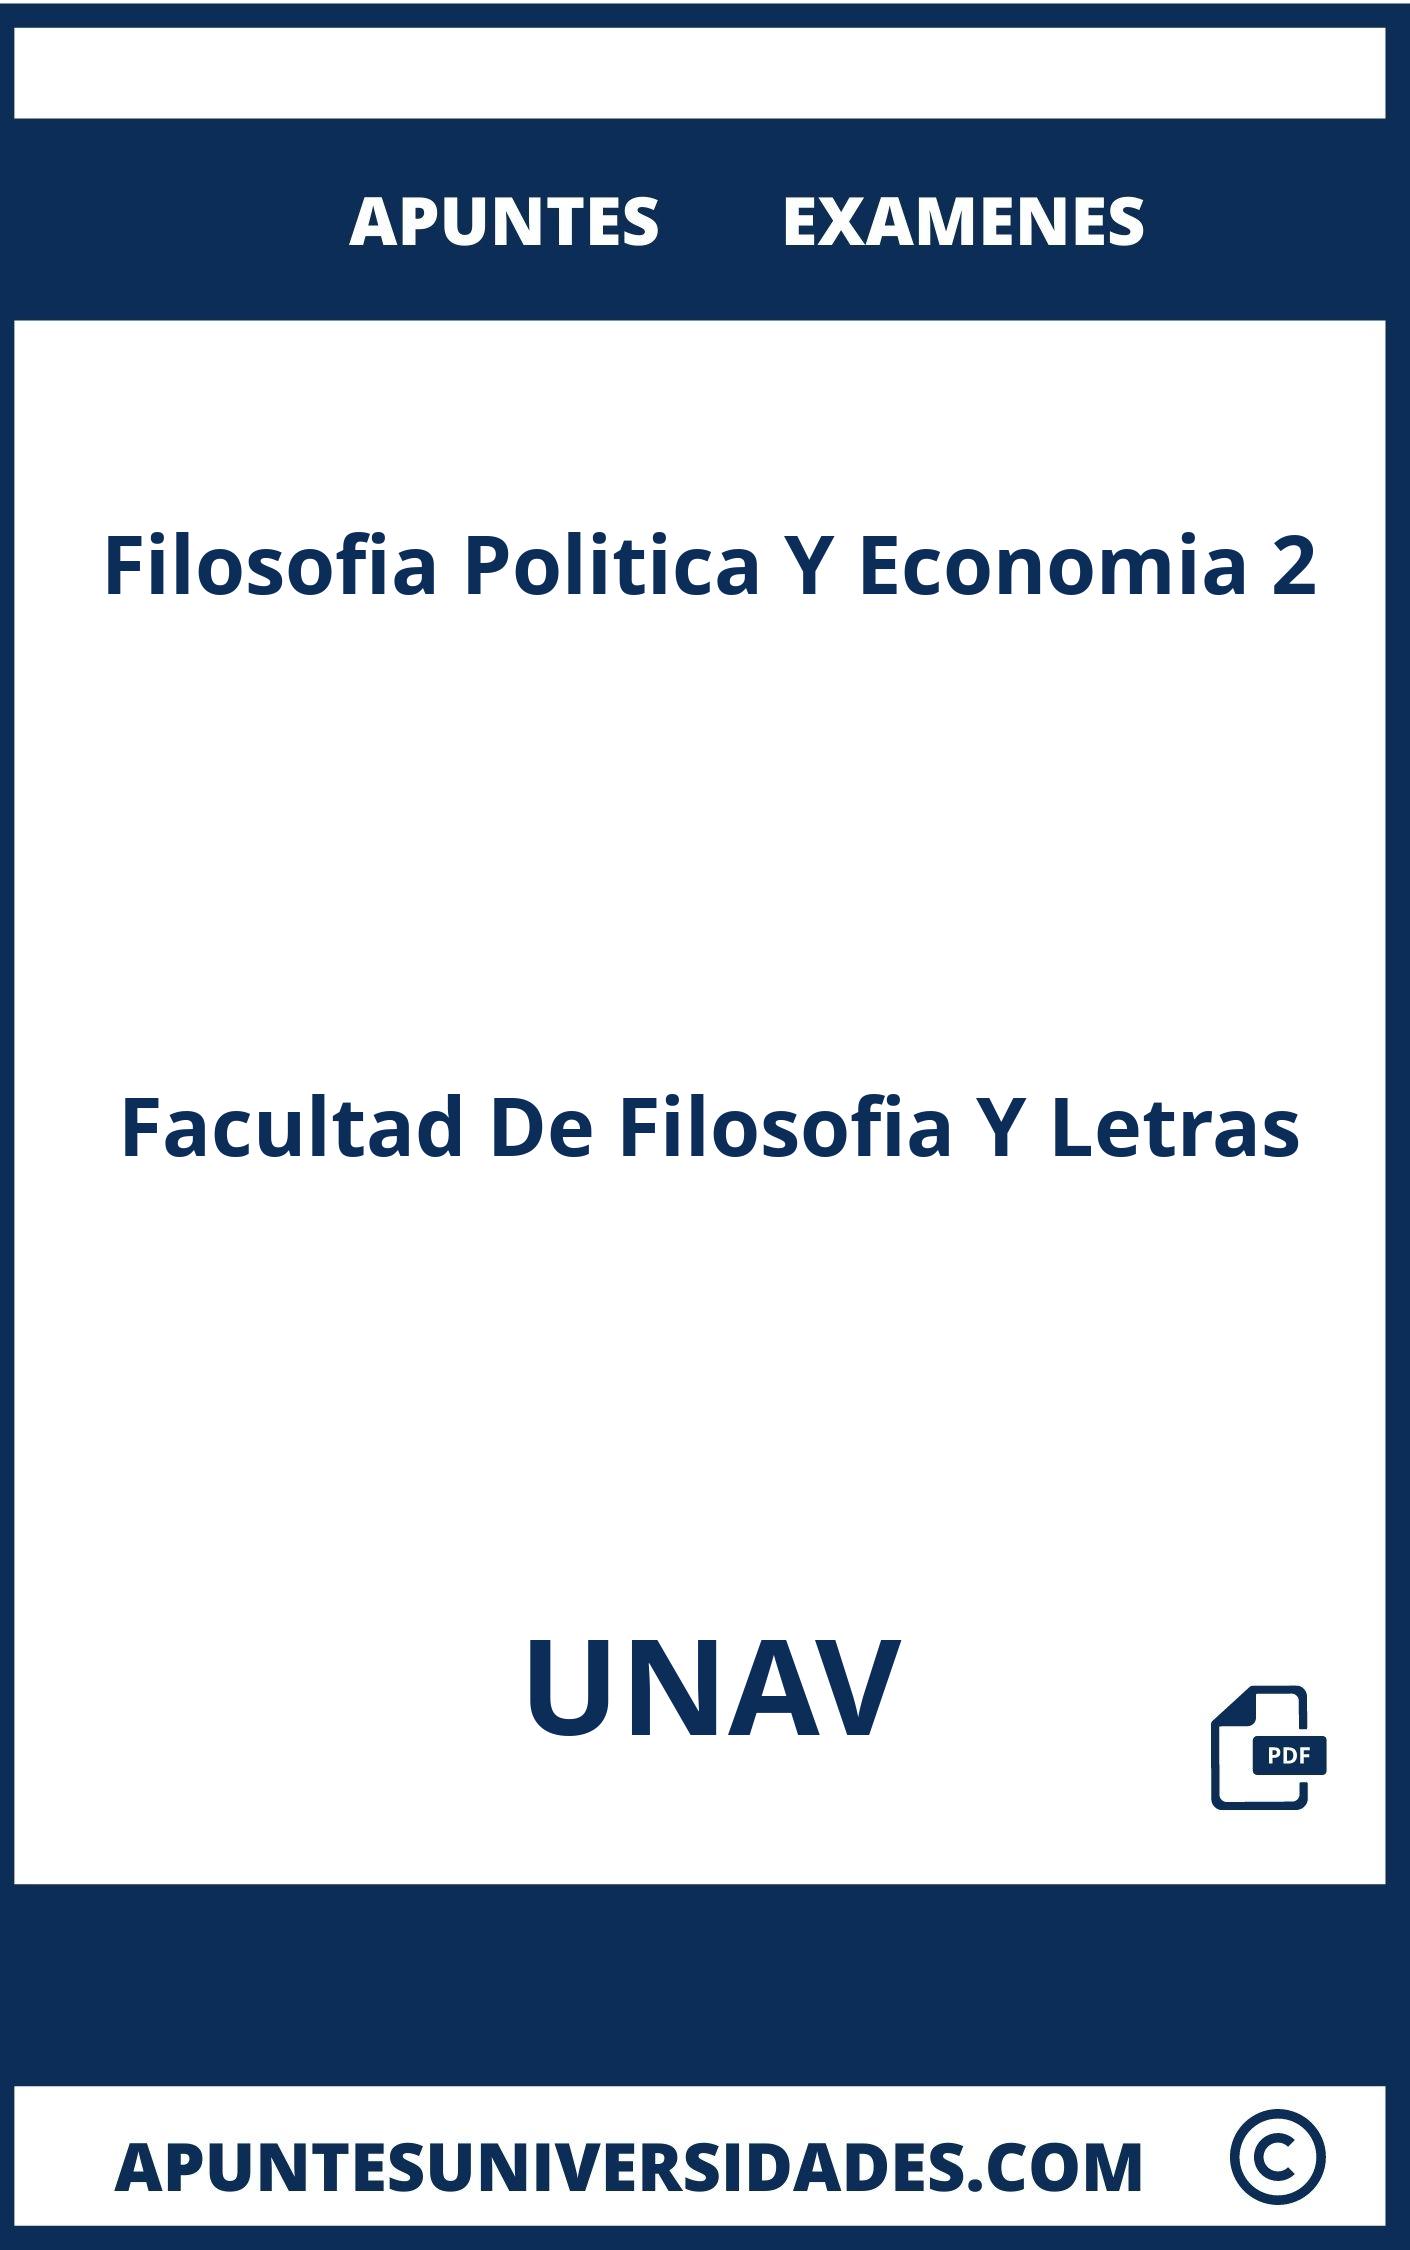 Filosofia Politica Y Economia 2 UNAV Examenes Apuntes